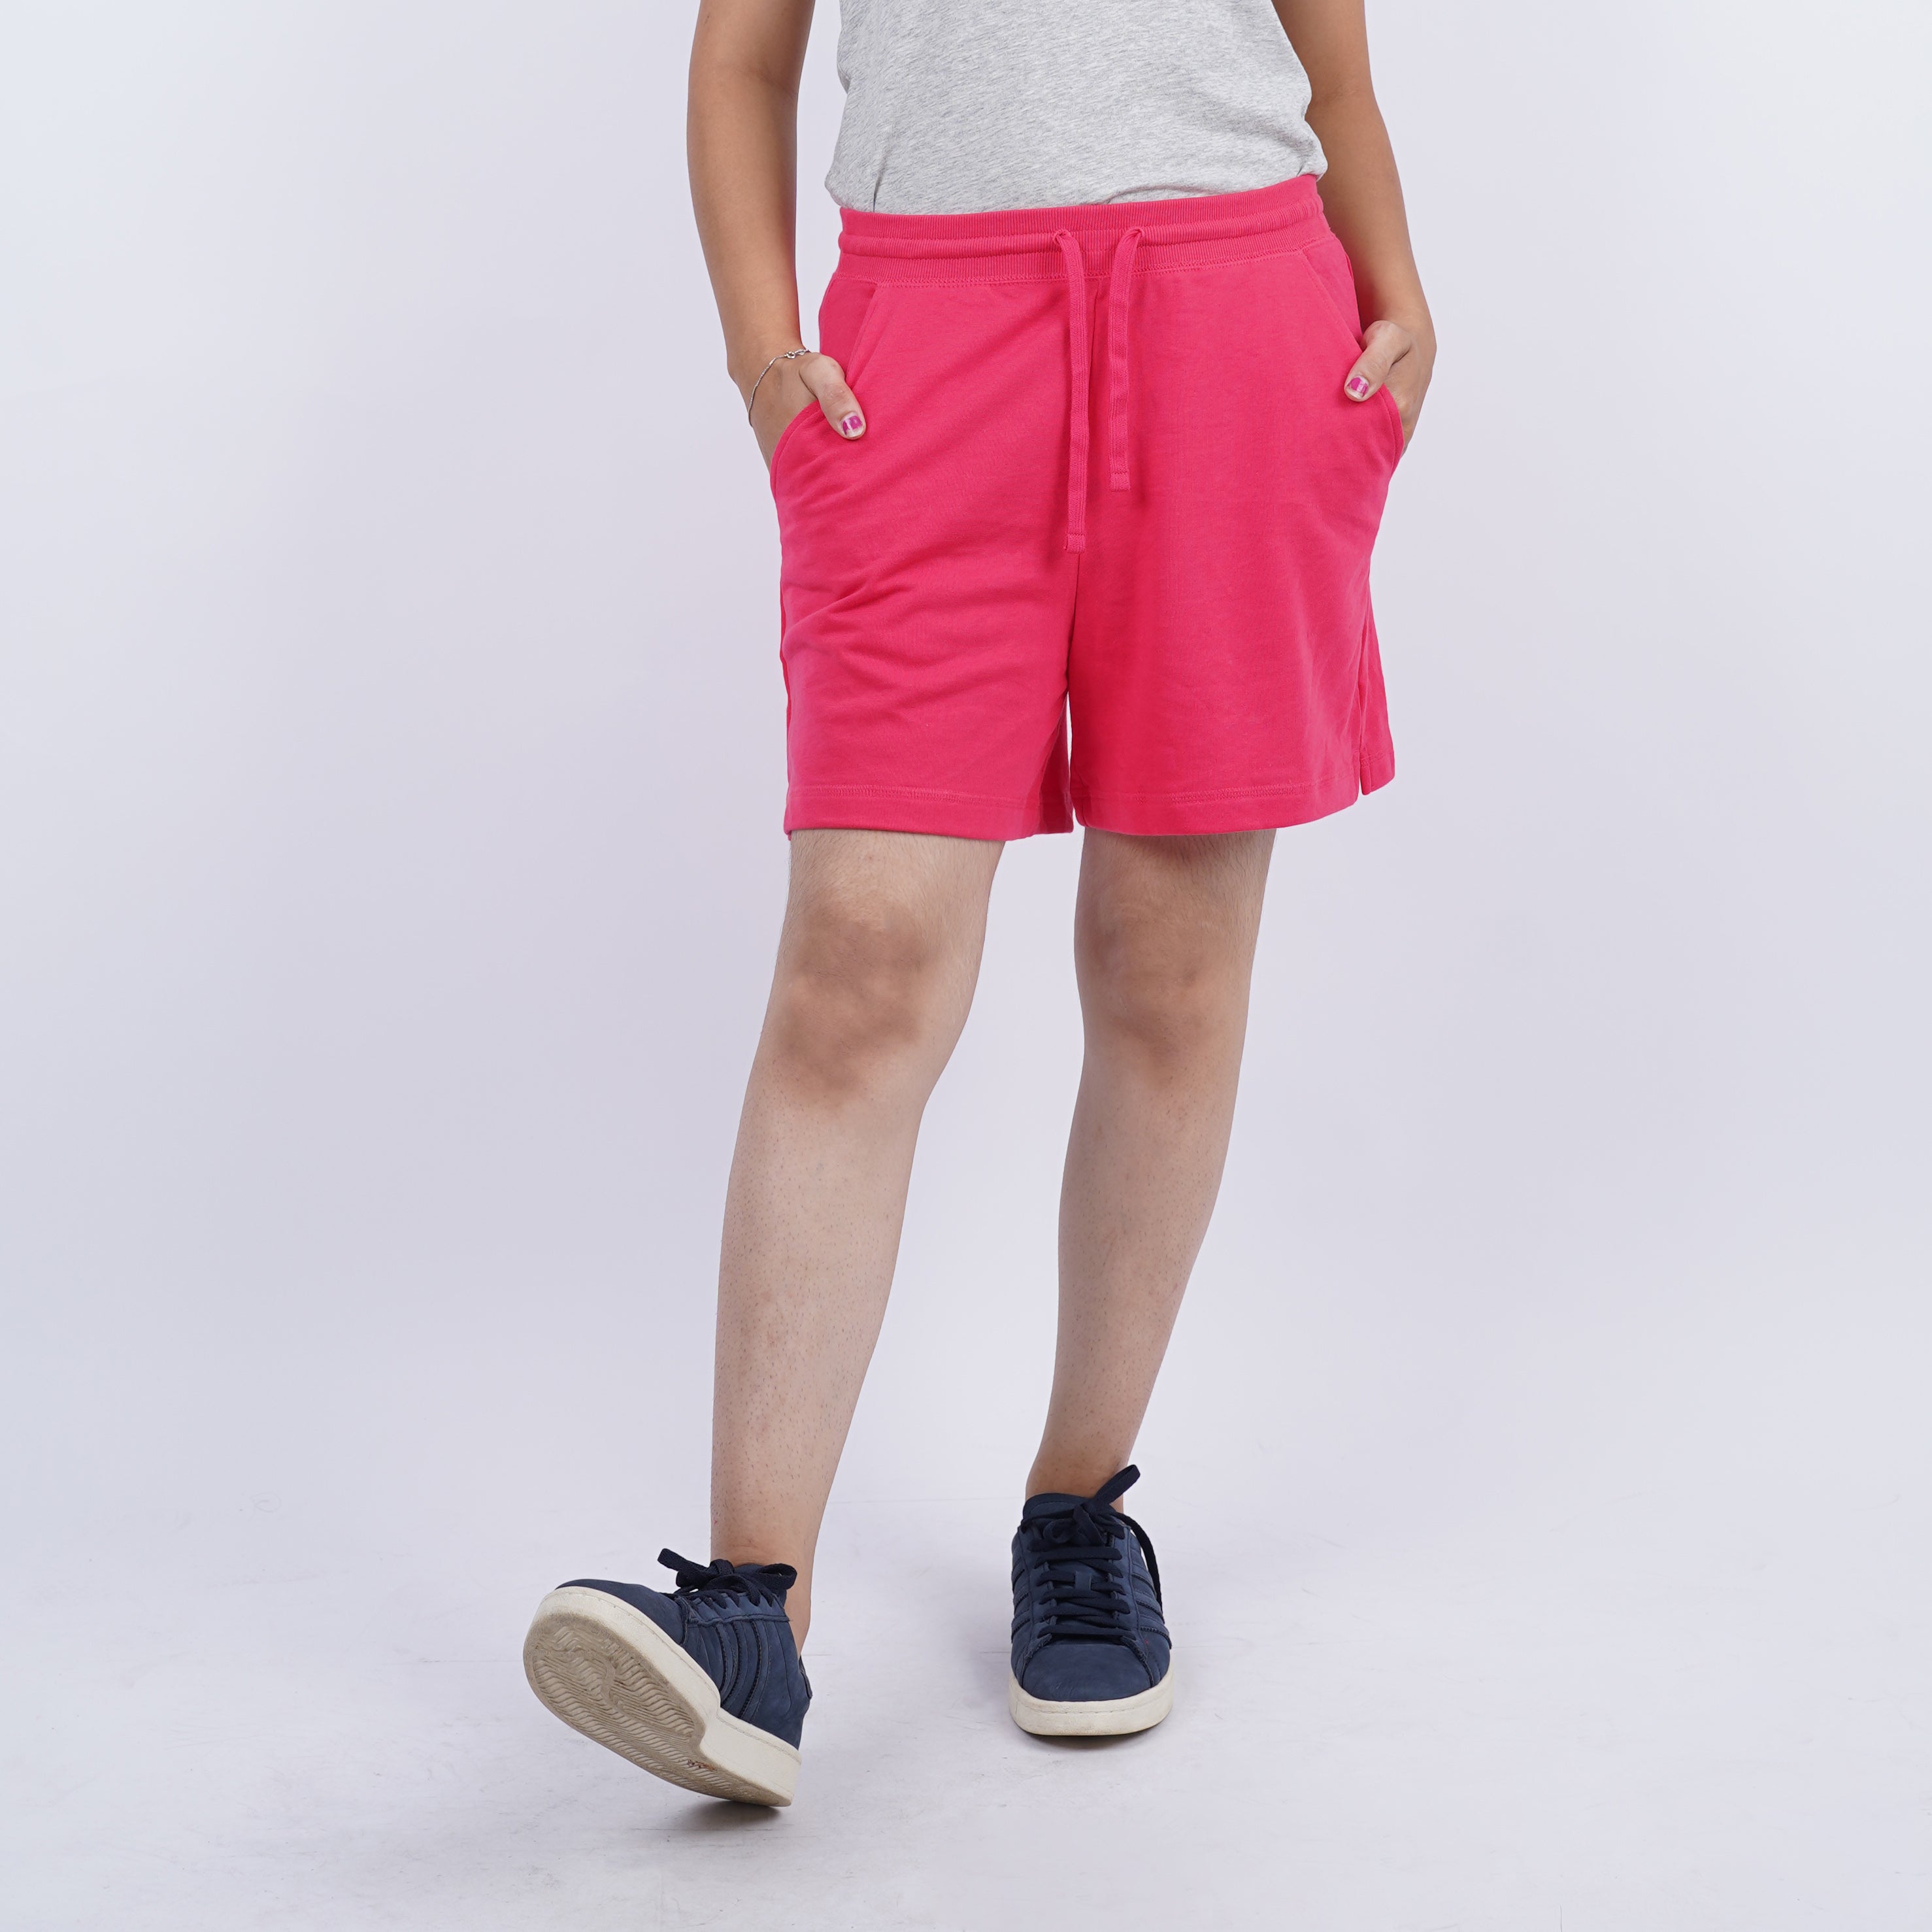 Celana Pendek Wanita tersedia 6 Warna [CG-ONS 10]